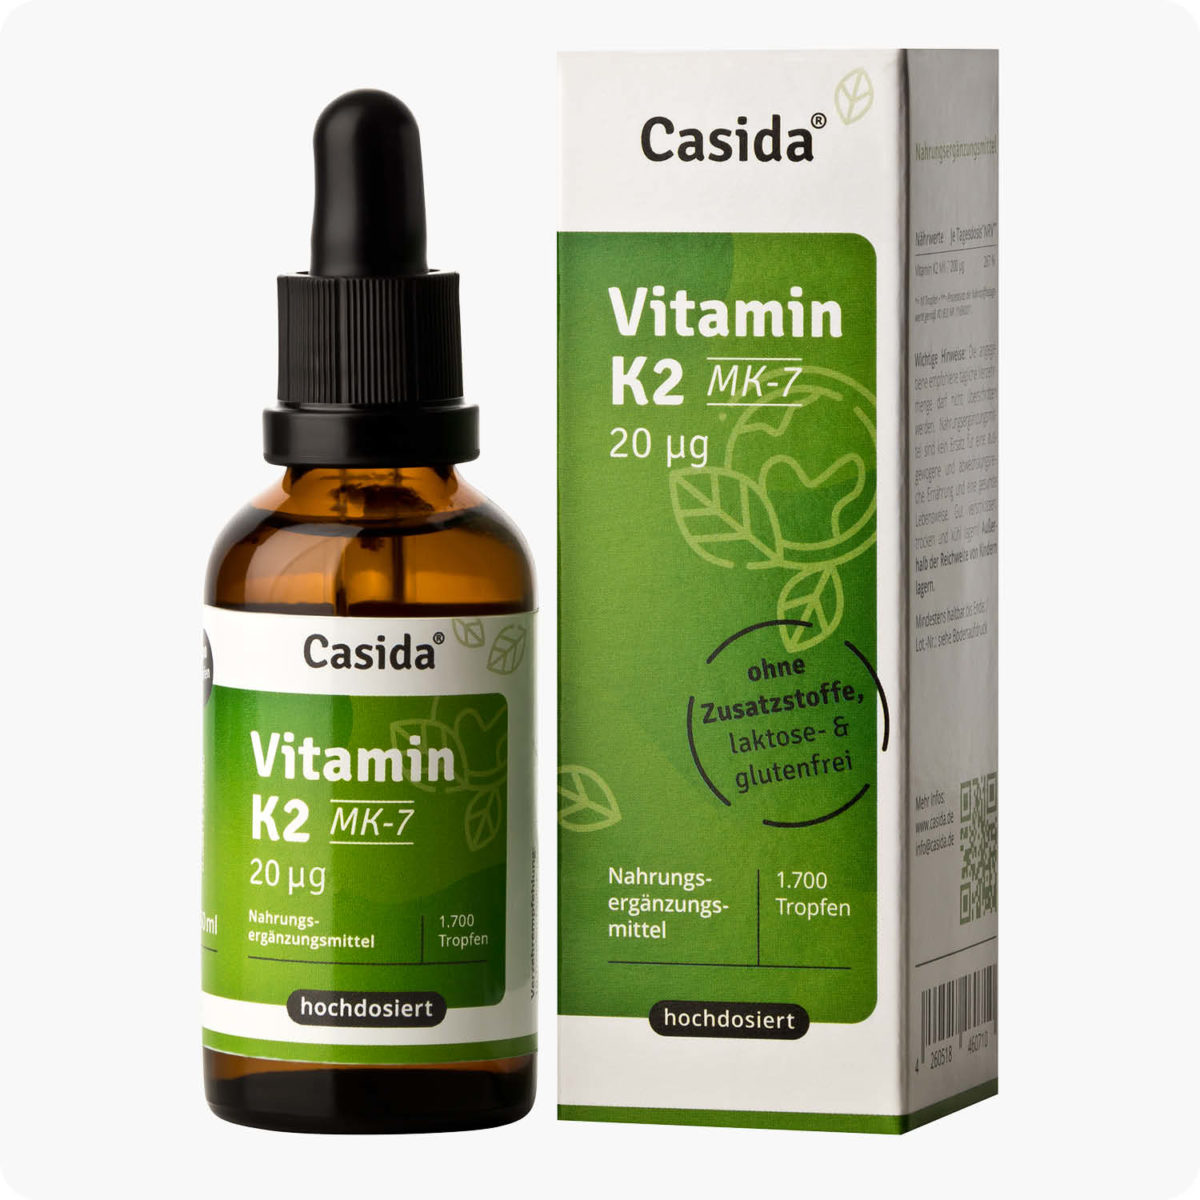 Casida Vitamin K2 Tropfen 20 µg MK7 vegan 50 ml PZN DE 16672049 PZN AT 5339045 UVP 22,95 € EAN 4260518460710